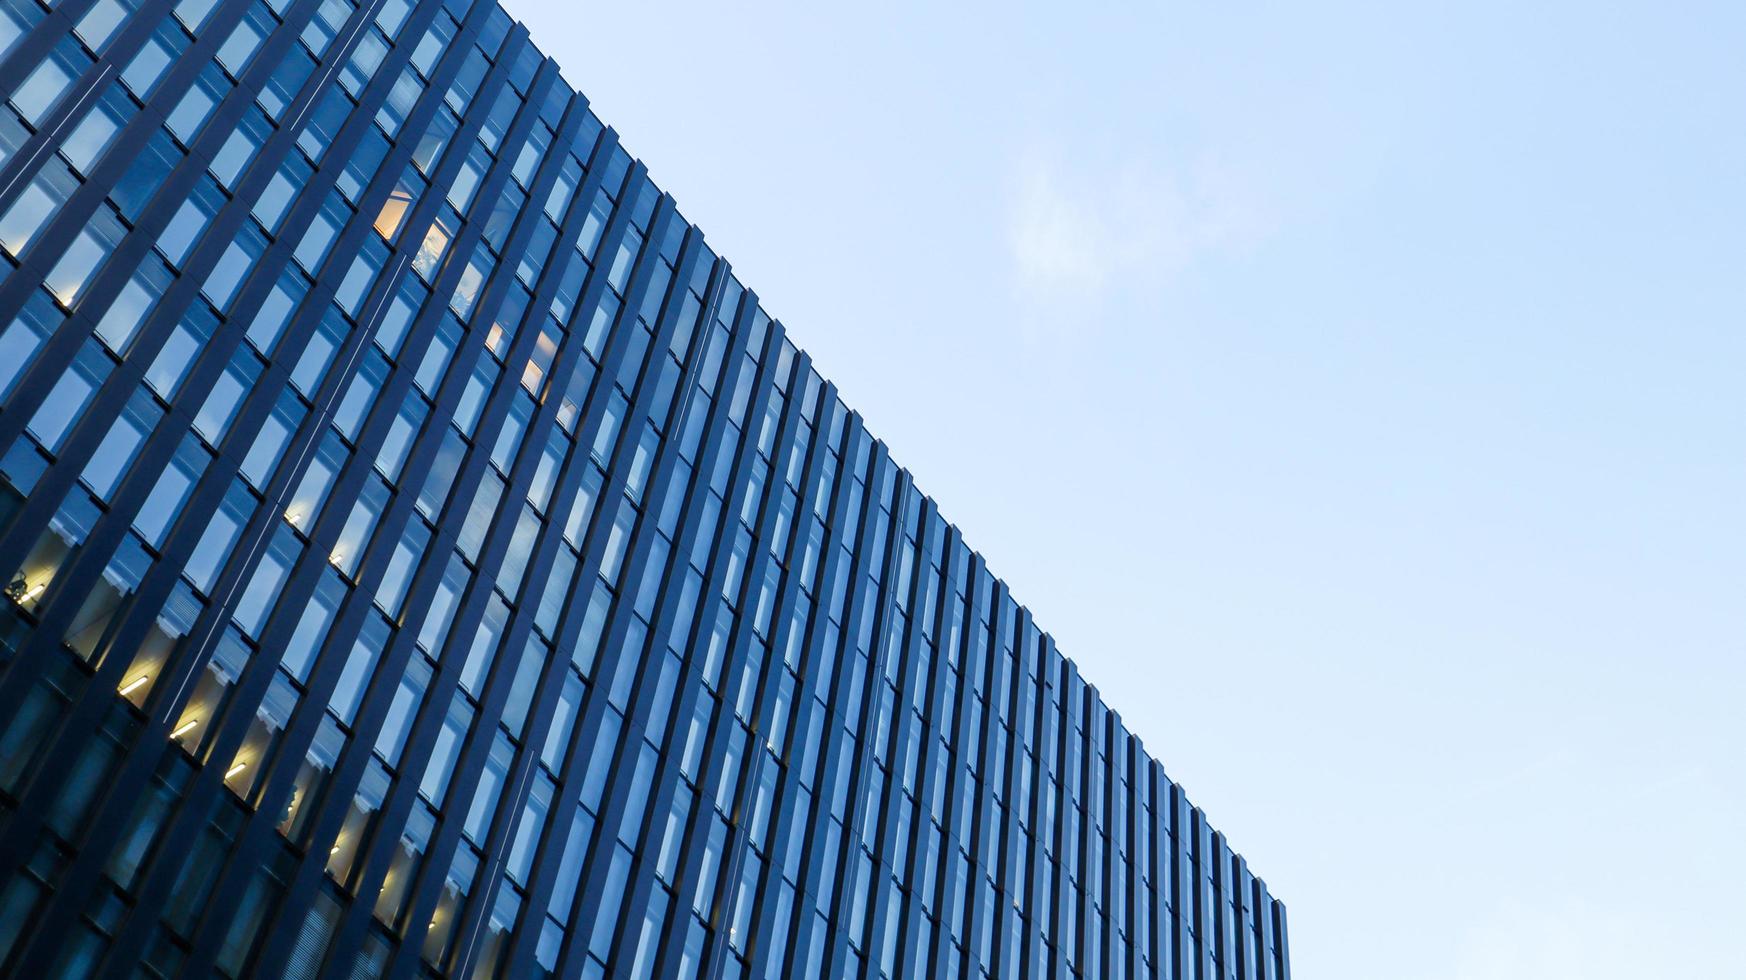 moderno edificio de gran altura contra el cielo azul. vista inferior de un rascacielos en el distrito de negocios. vista de ángulo bajo de la fachada de vidrio de un edificio de oficinas. foto